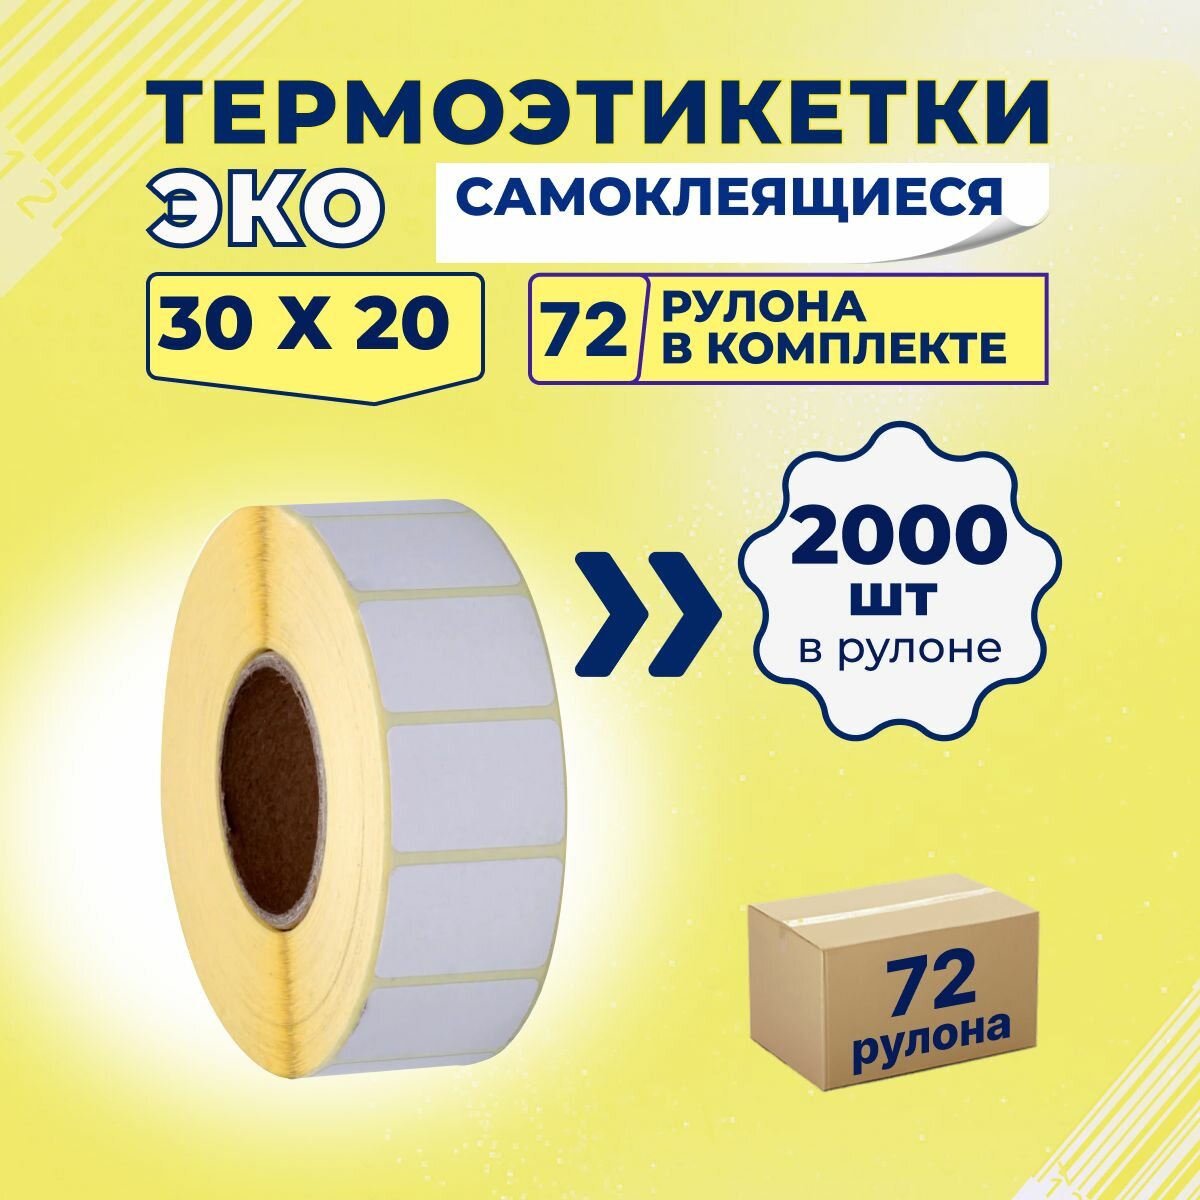 Термоэтикетки ЭКО 30х20 мм самоклеящиеся, 2000 наклеек в 1 ролике, (упаковка 72 ролика), втулка 40 мм